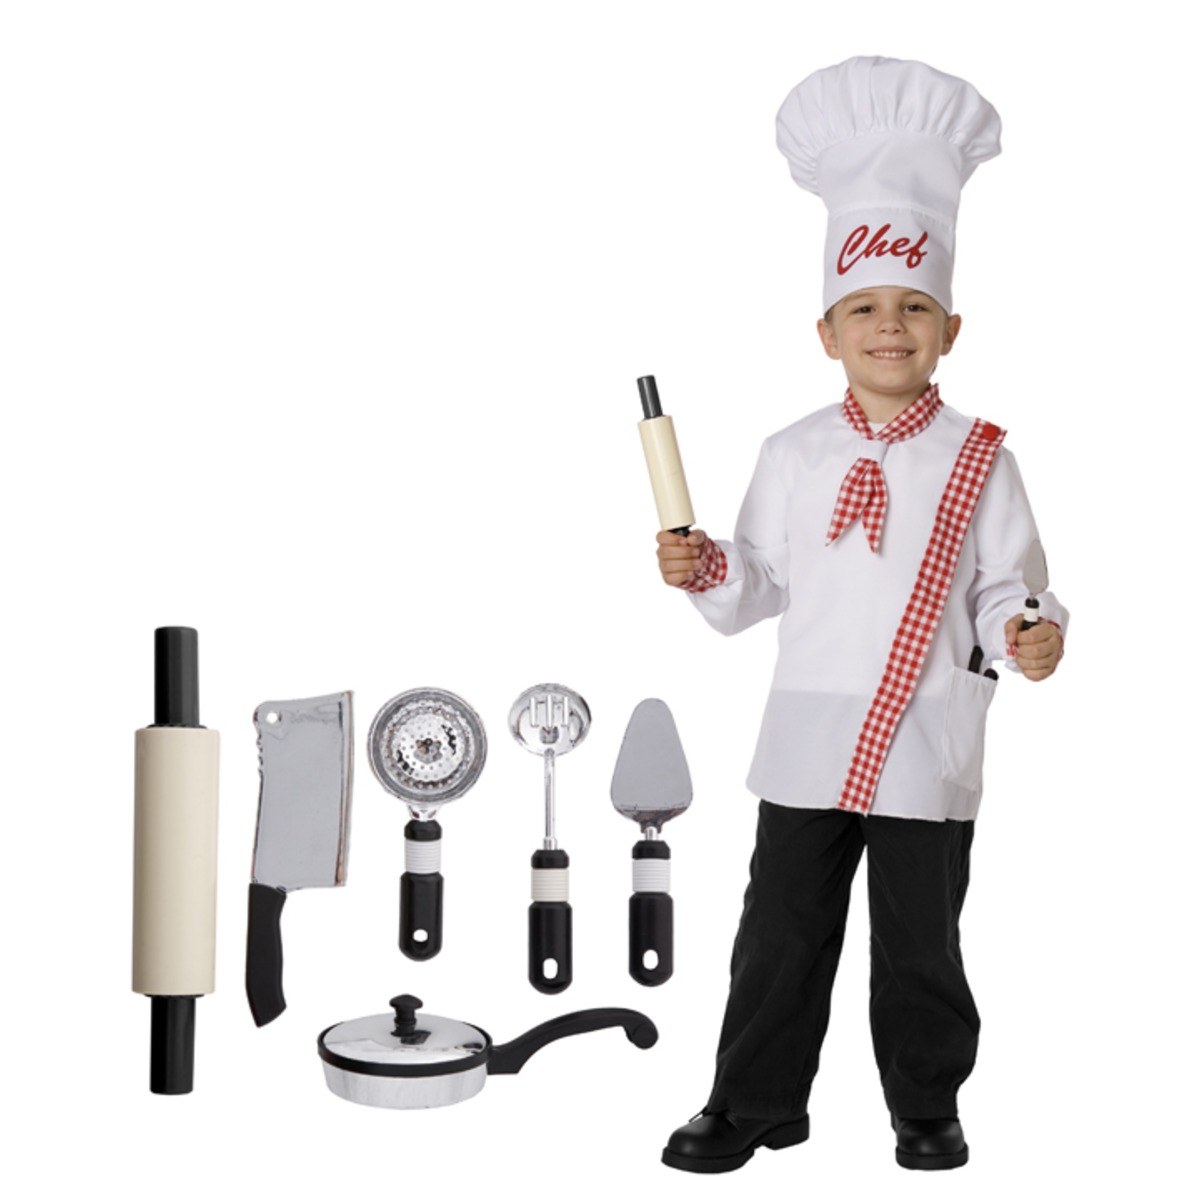 Déguisement de chef cuisinier + accessoires - Taille 4 à 8 ans - Blanc, Rouge